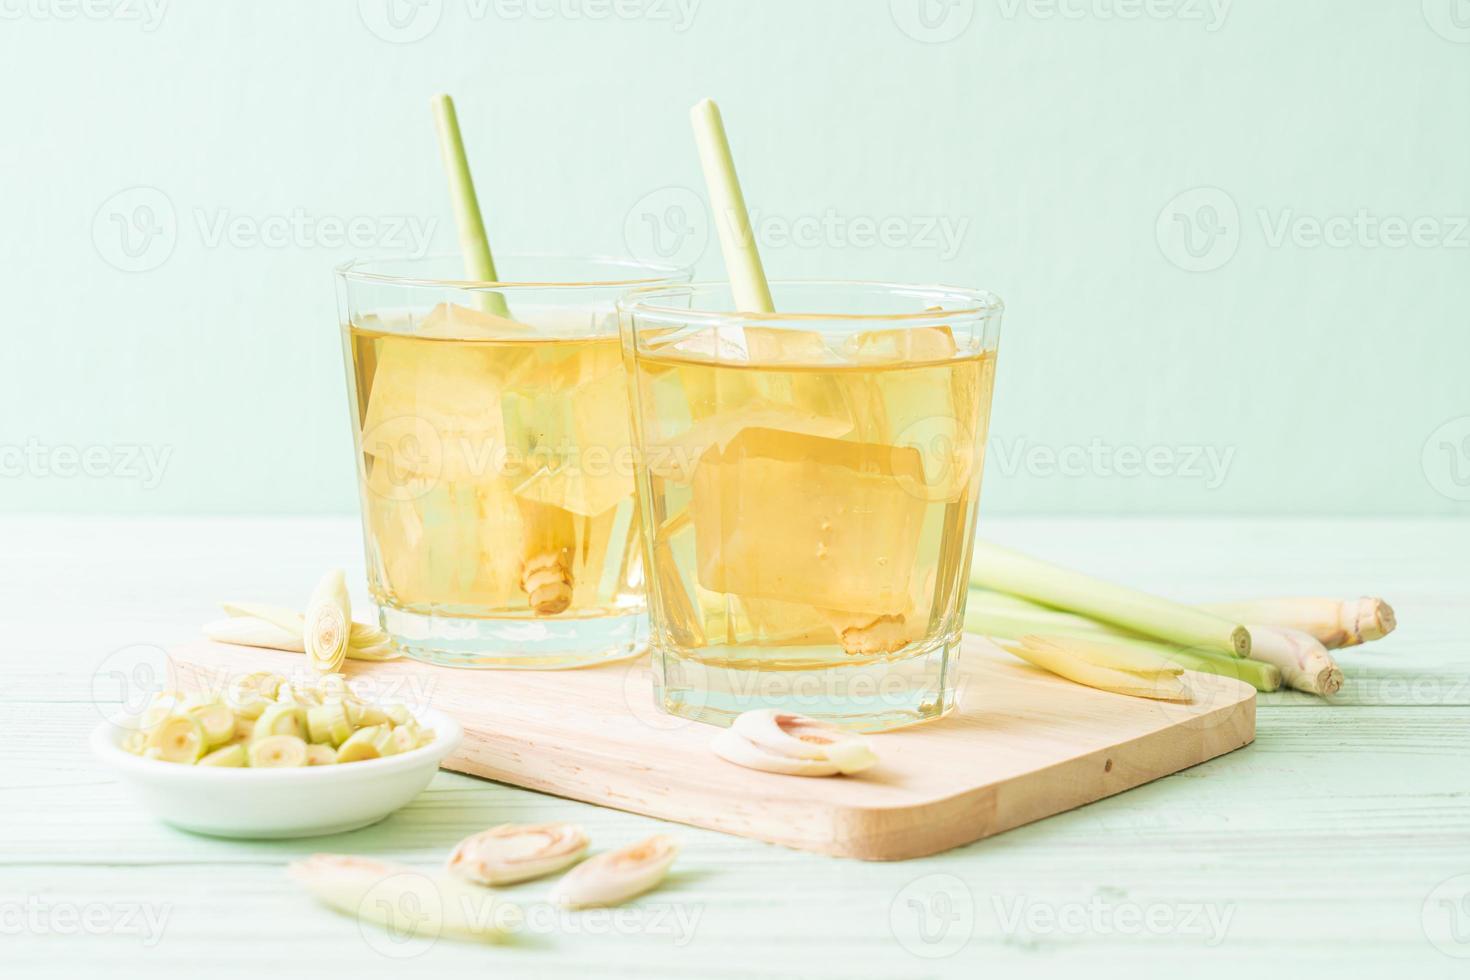 isad citrongräsjuice på träbakgrund foto